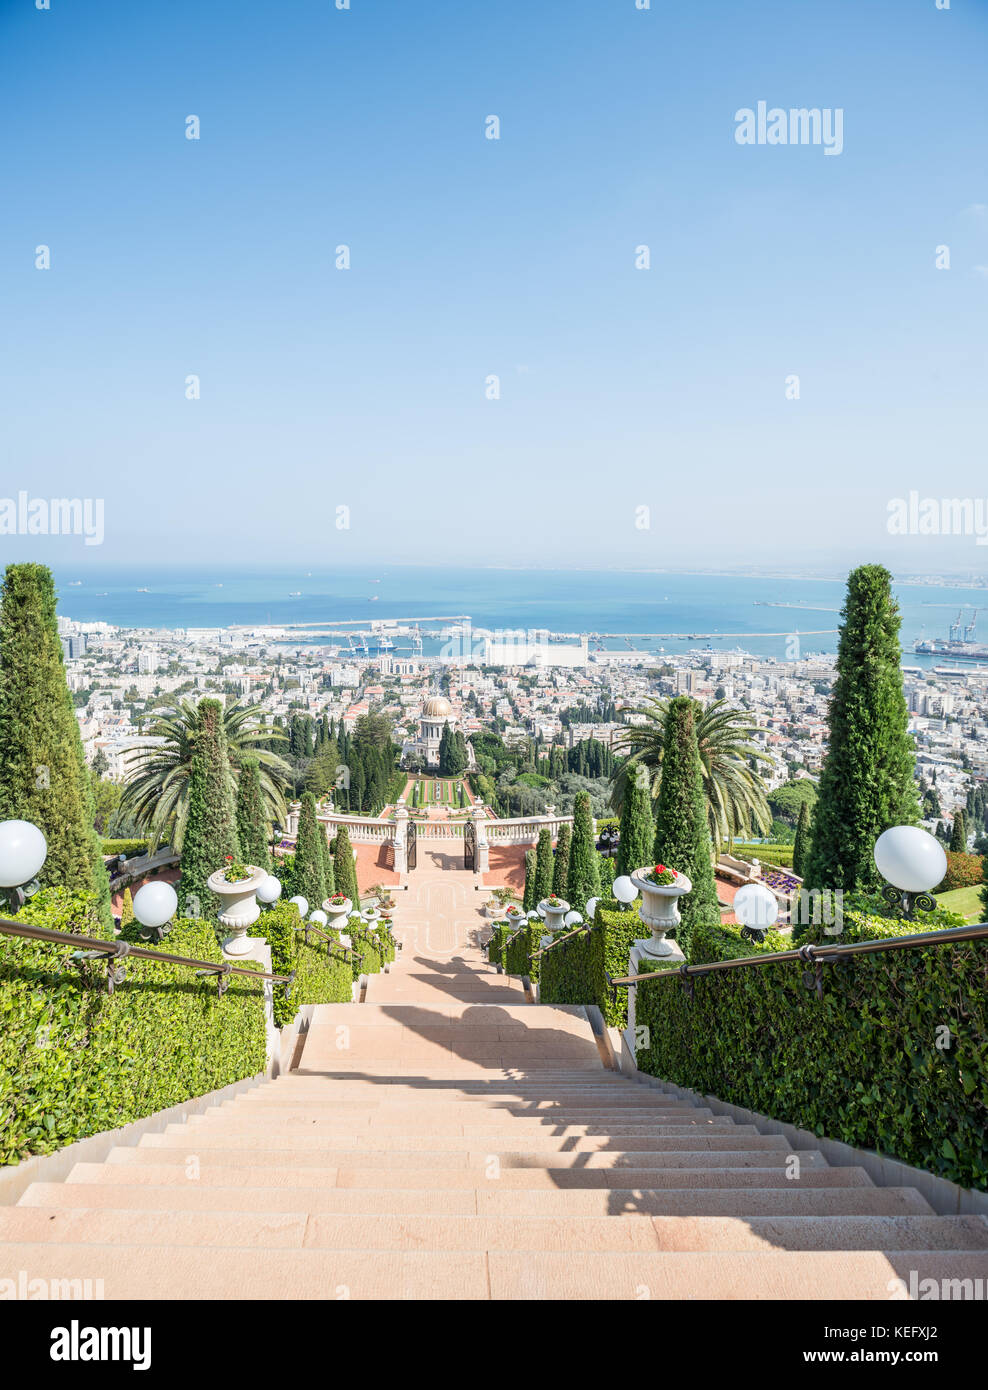 Israel, Haifa - Oktober 8: Bahá'í World Centre - ein Wallfahrtsort für Bahá'í-Anhänger und einer der am meisten besuchten Ort in Israel. Stockfoto